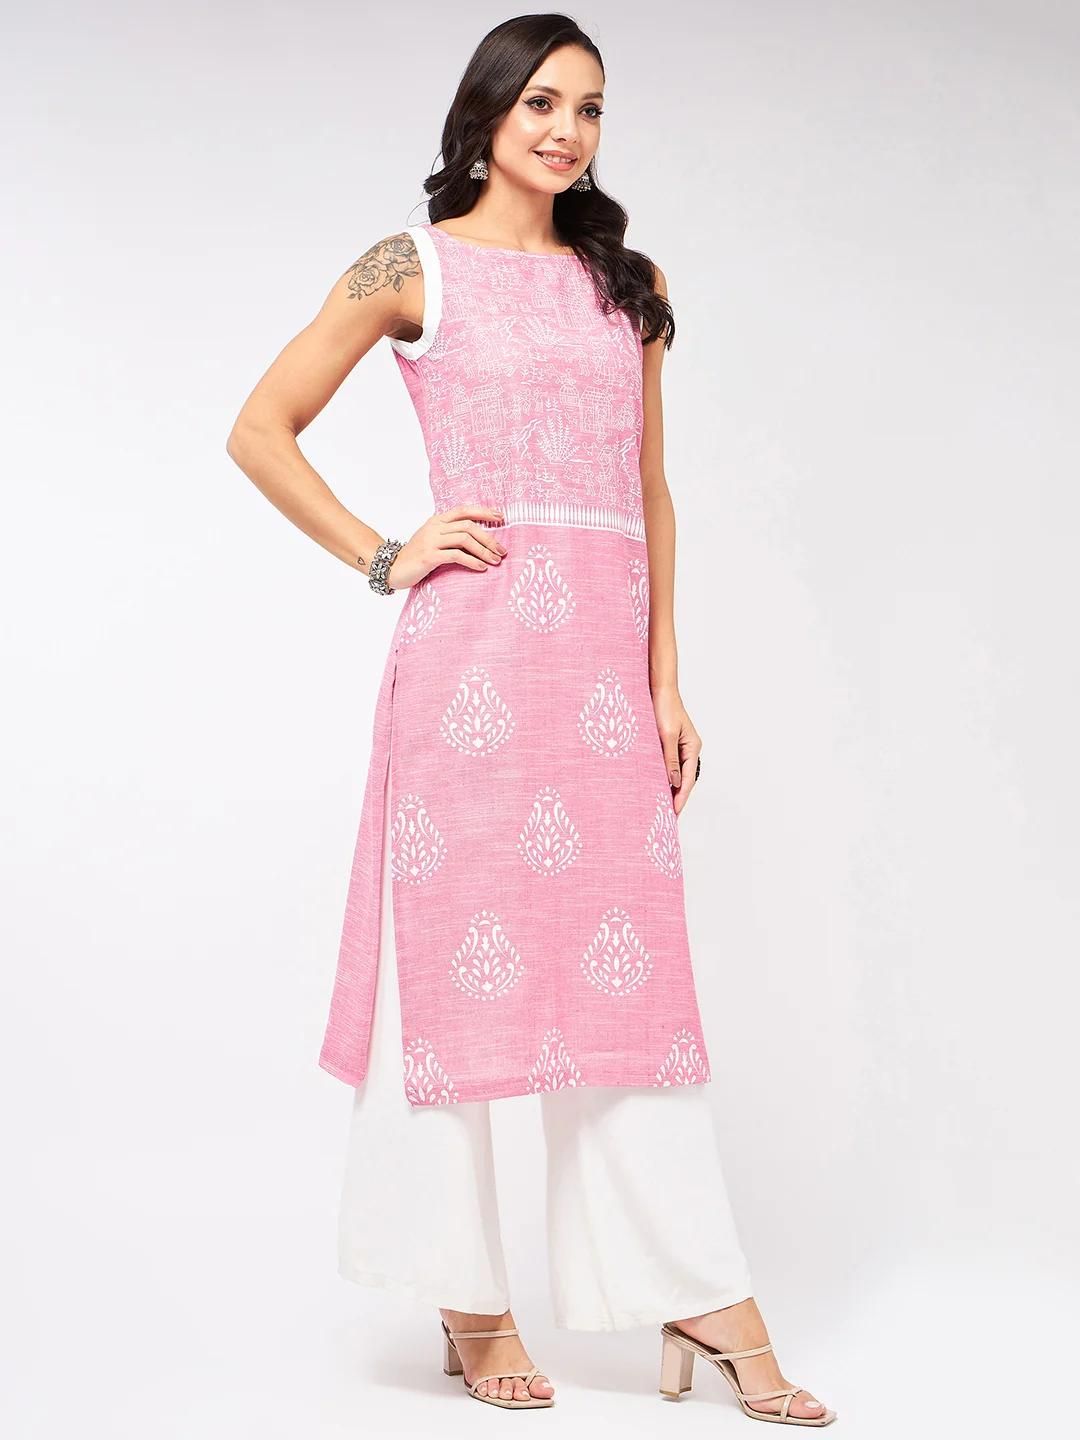 PANNKH Sleeveless Printed Chambray Pink Kurta